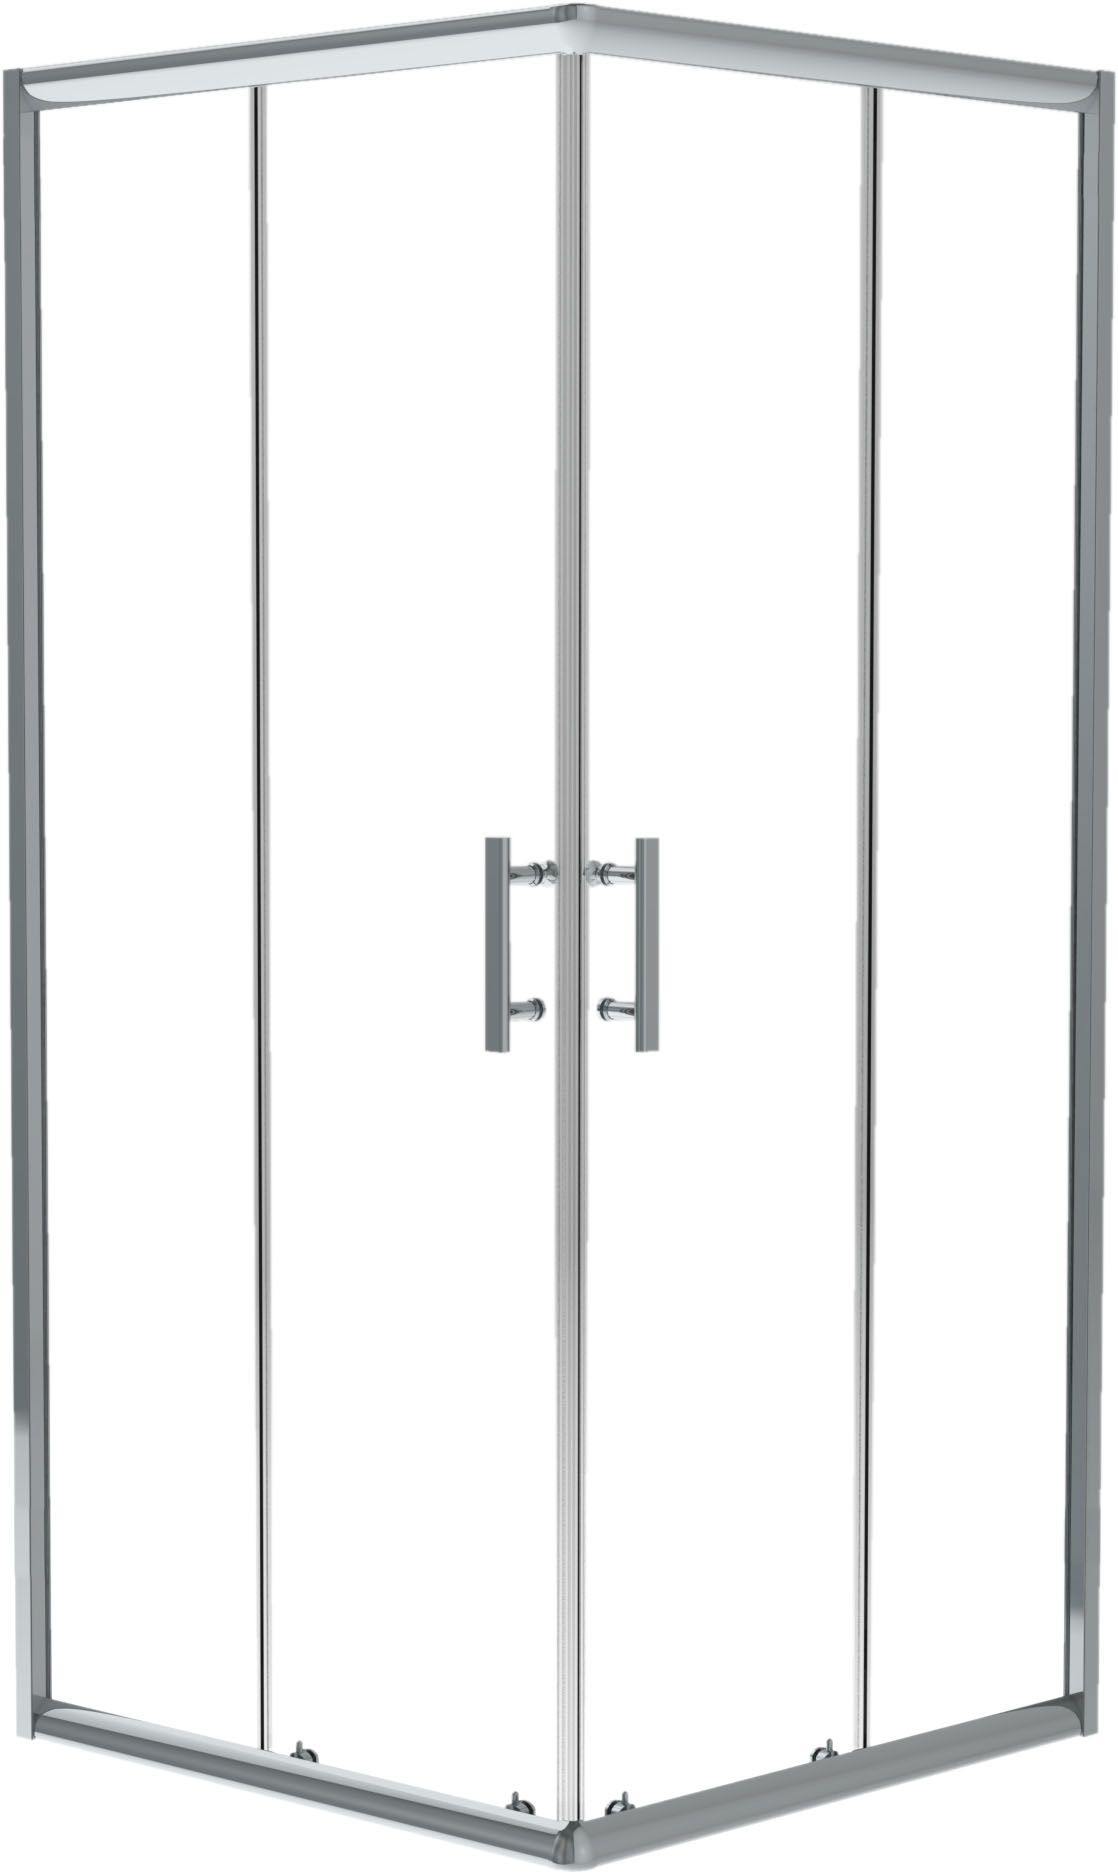 Cabina doccia, quadrato, 90 cm - KTJ_041P - Główne zdjęcie produktowe